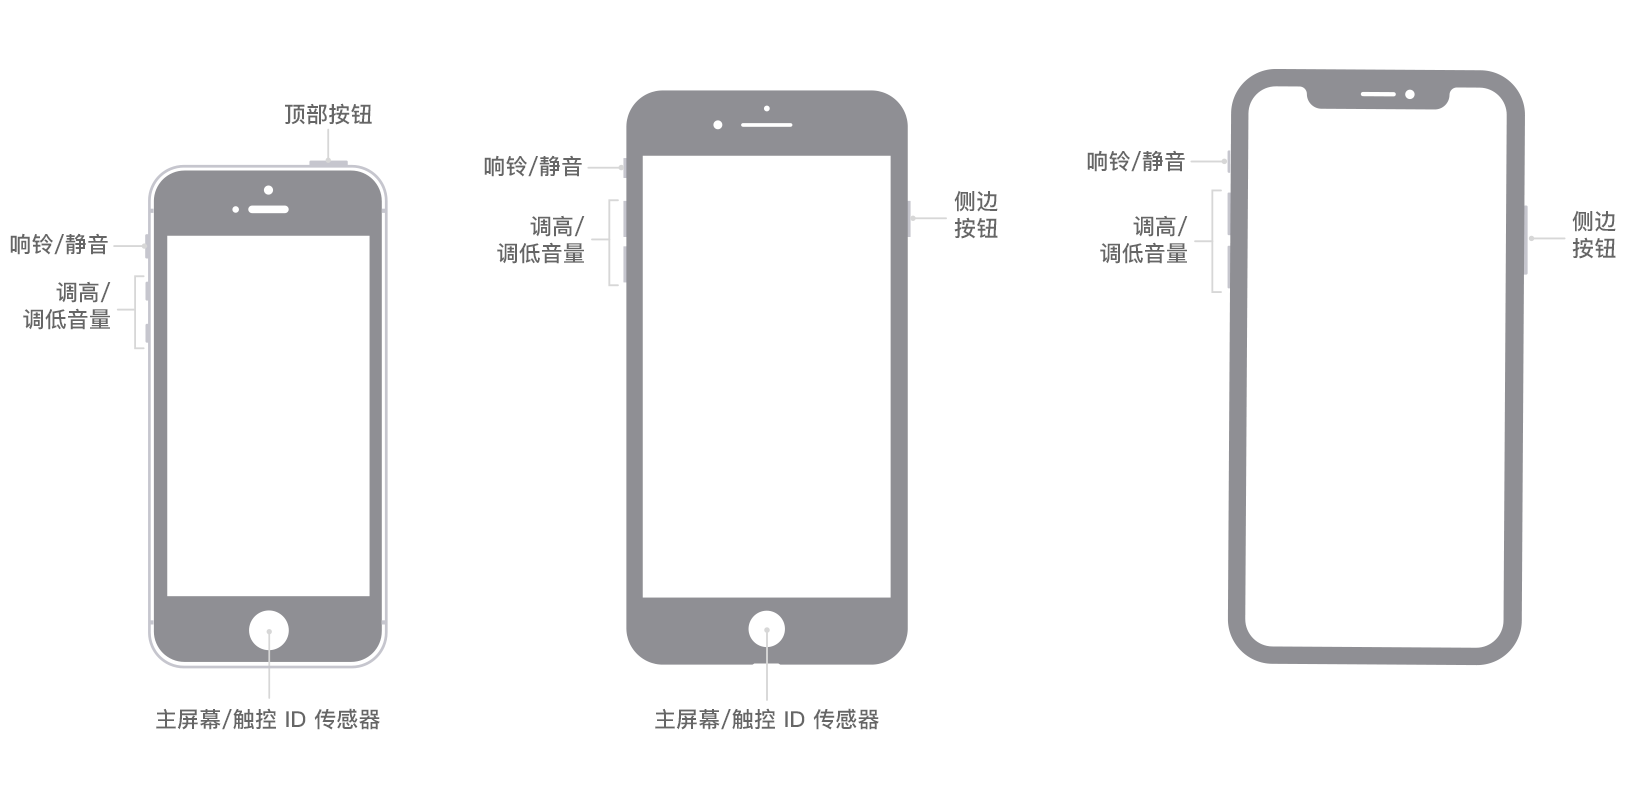 图像中显示了不同 iPhone 机型上的按钮